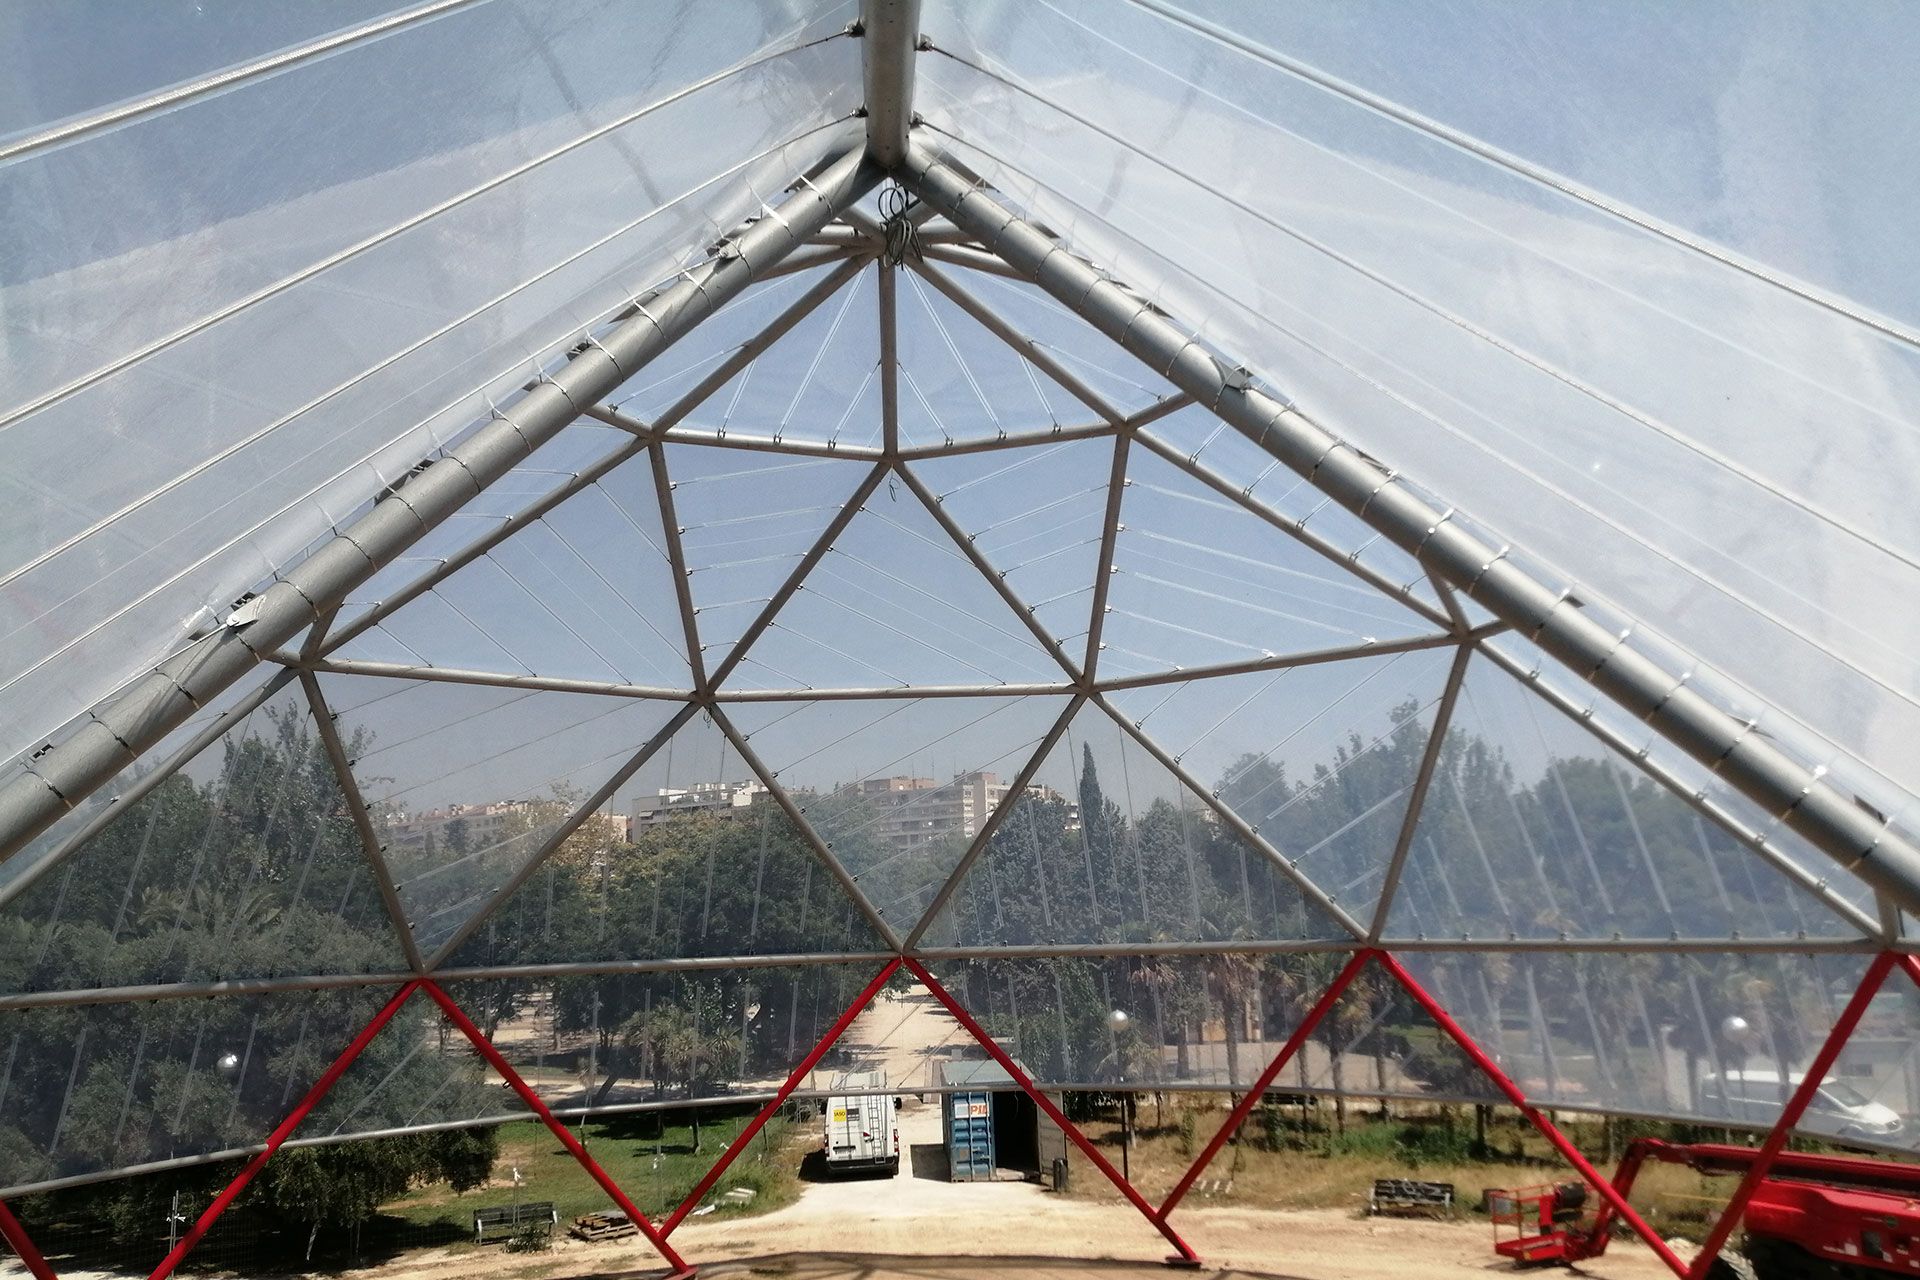 Geodesic dome in La Granja de Zaragoza park.